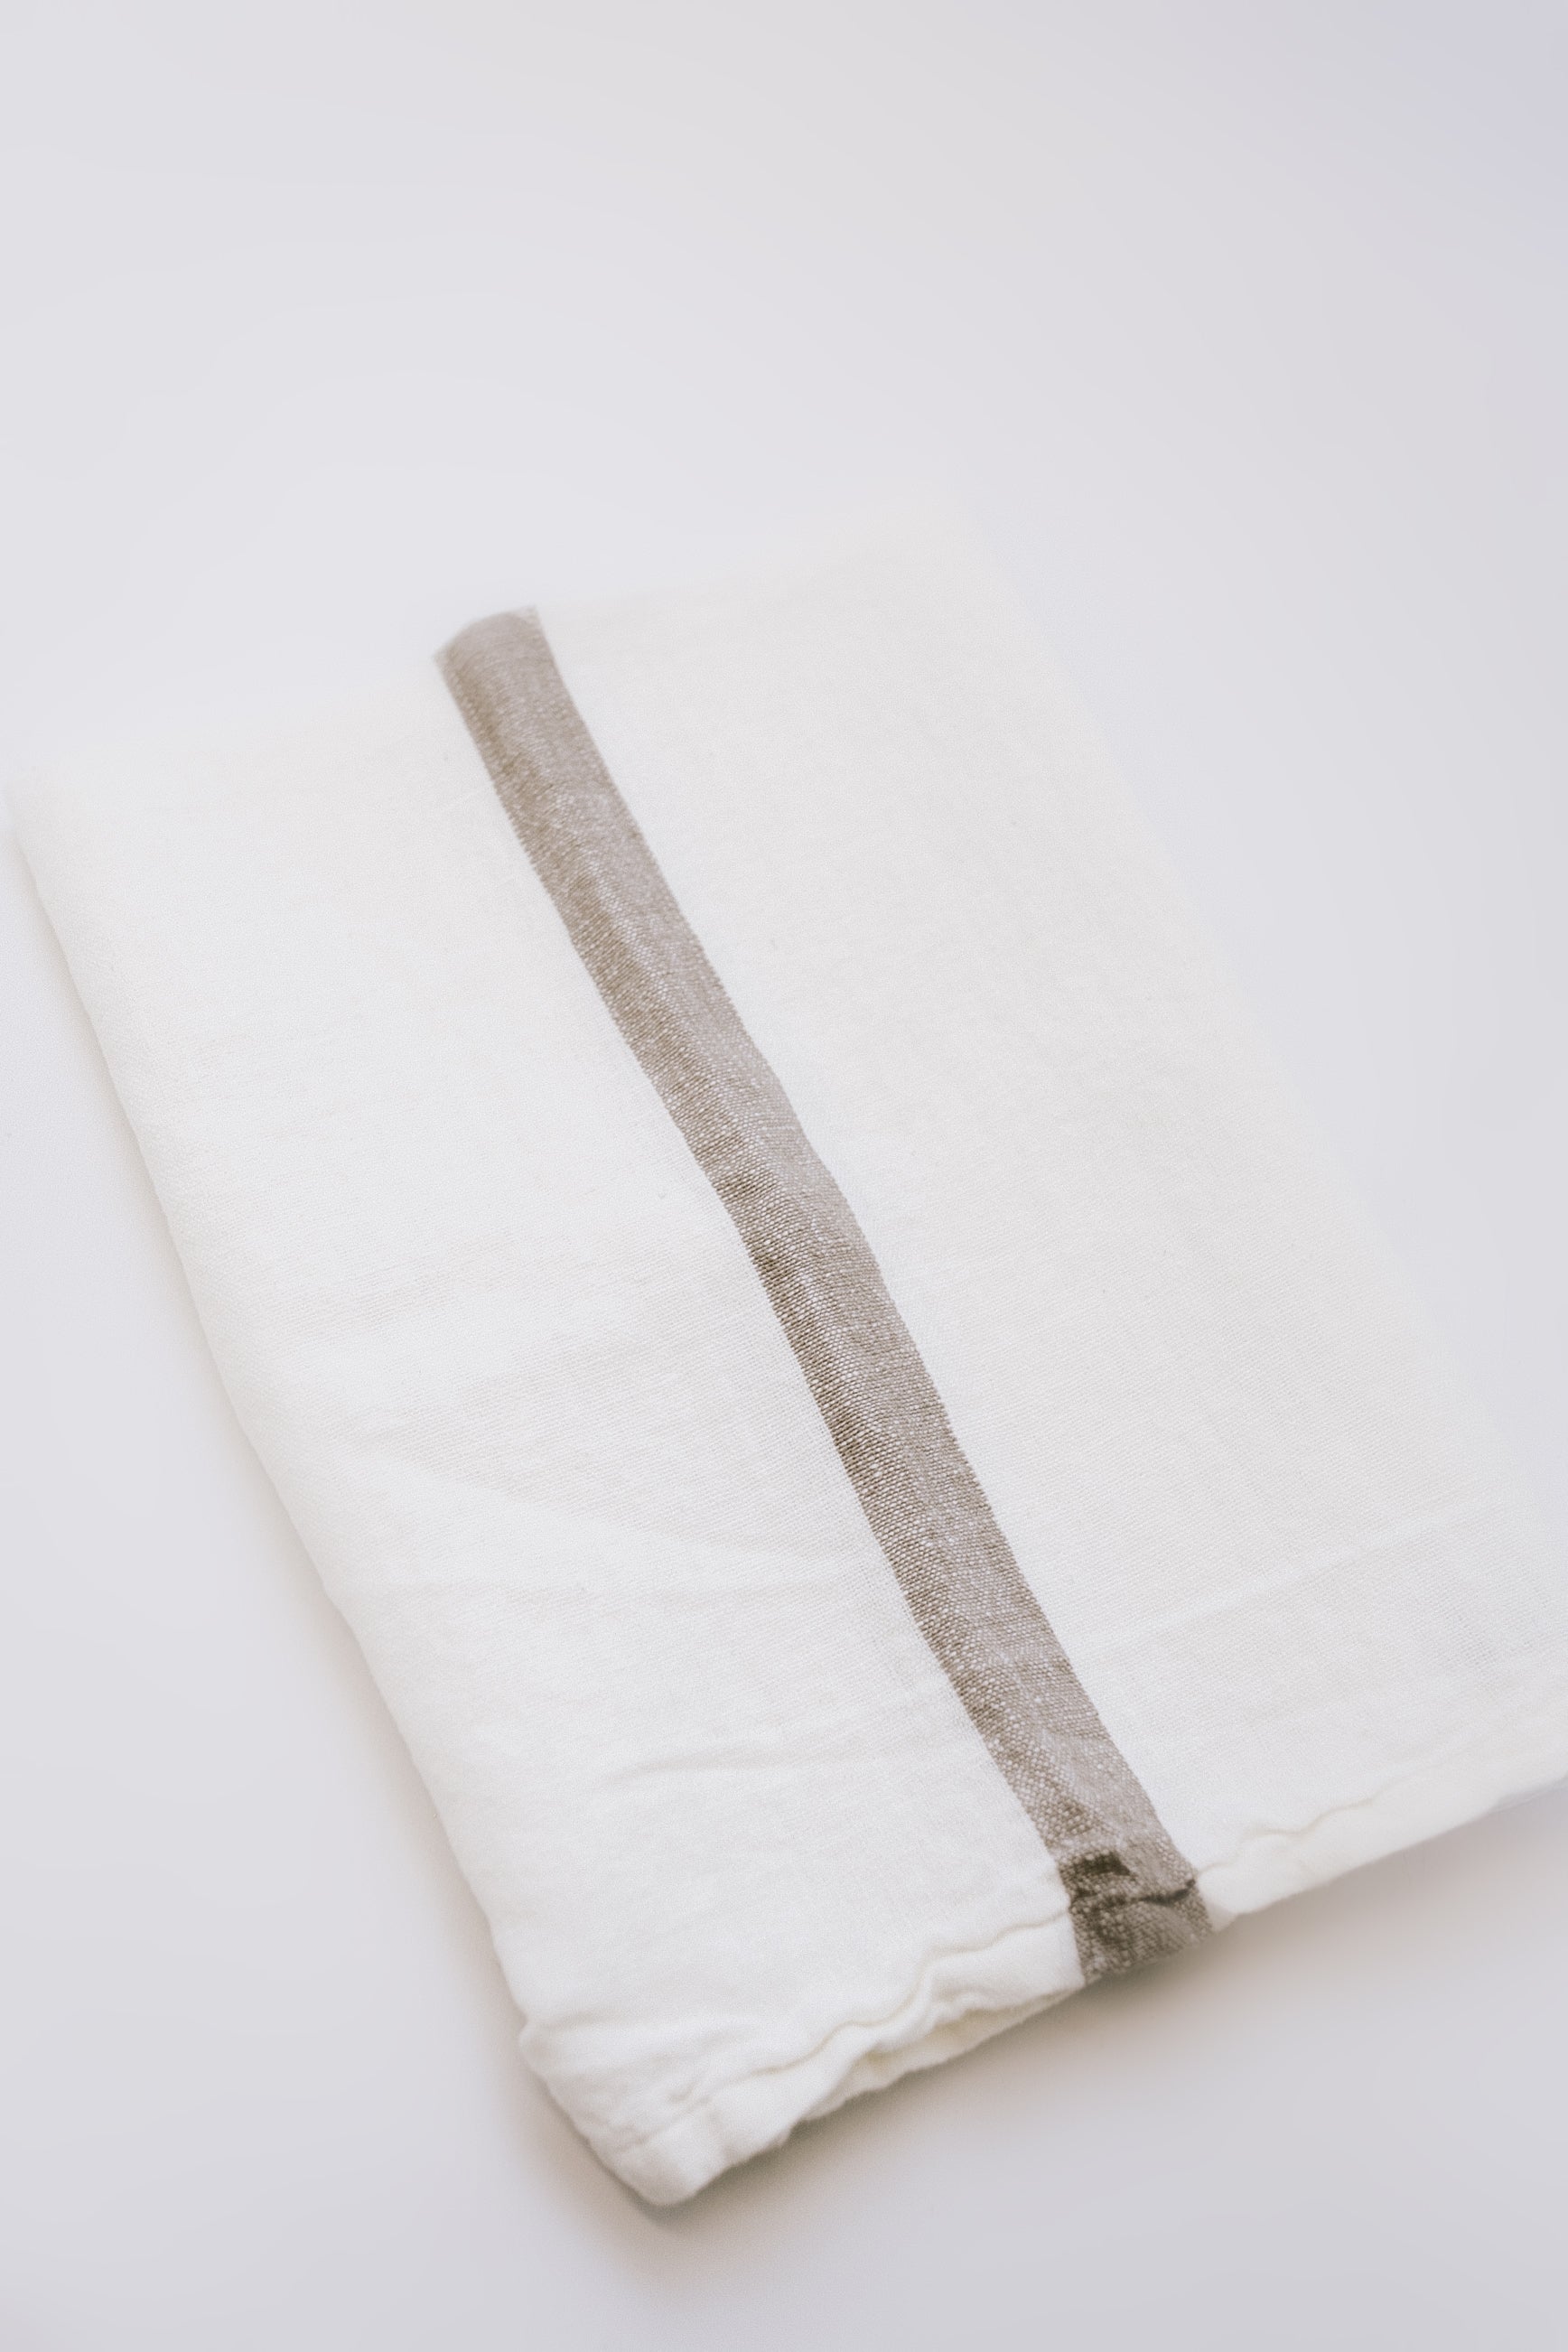 Loralei Striped Tea Towel - Beige